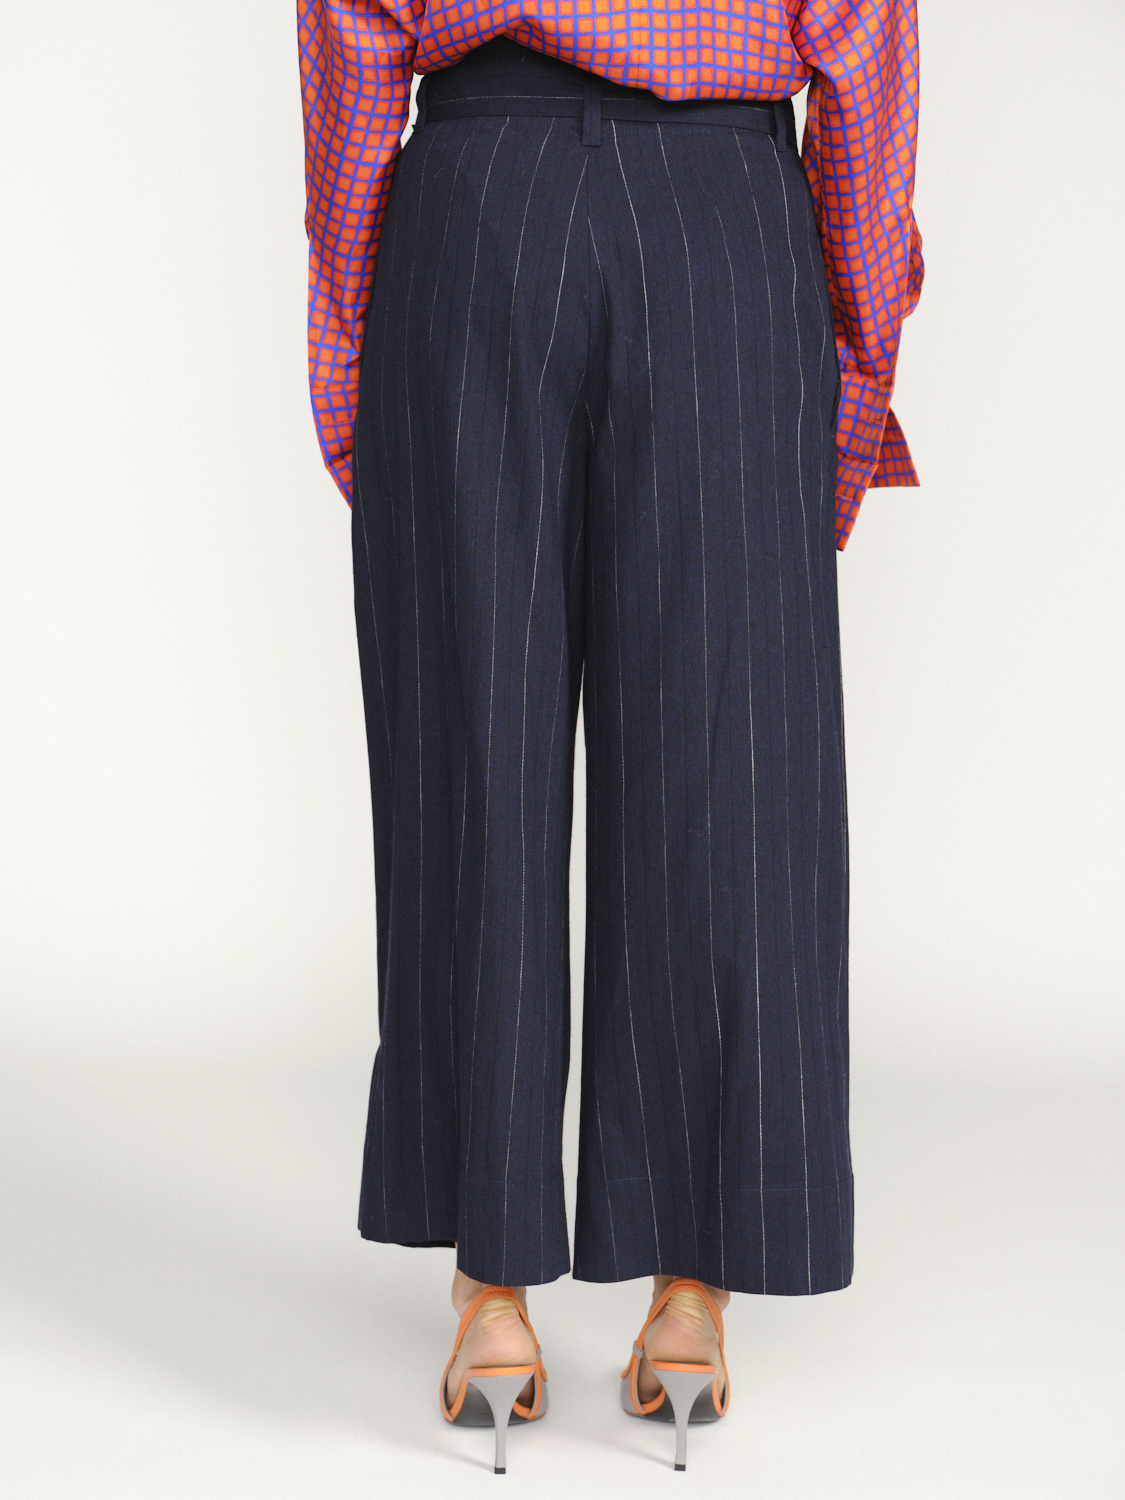 Odeeh Pantalon à rayures avec partie en laine vierge grau 34